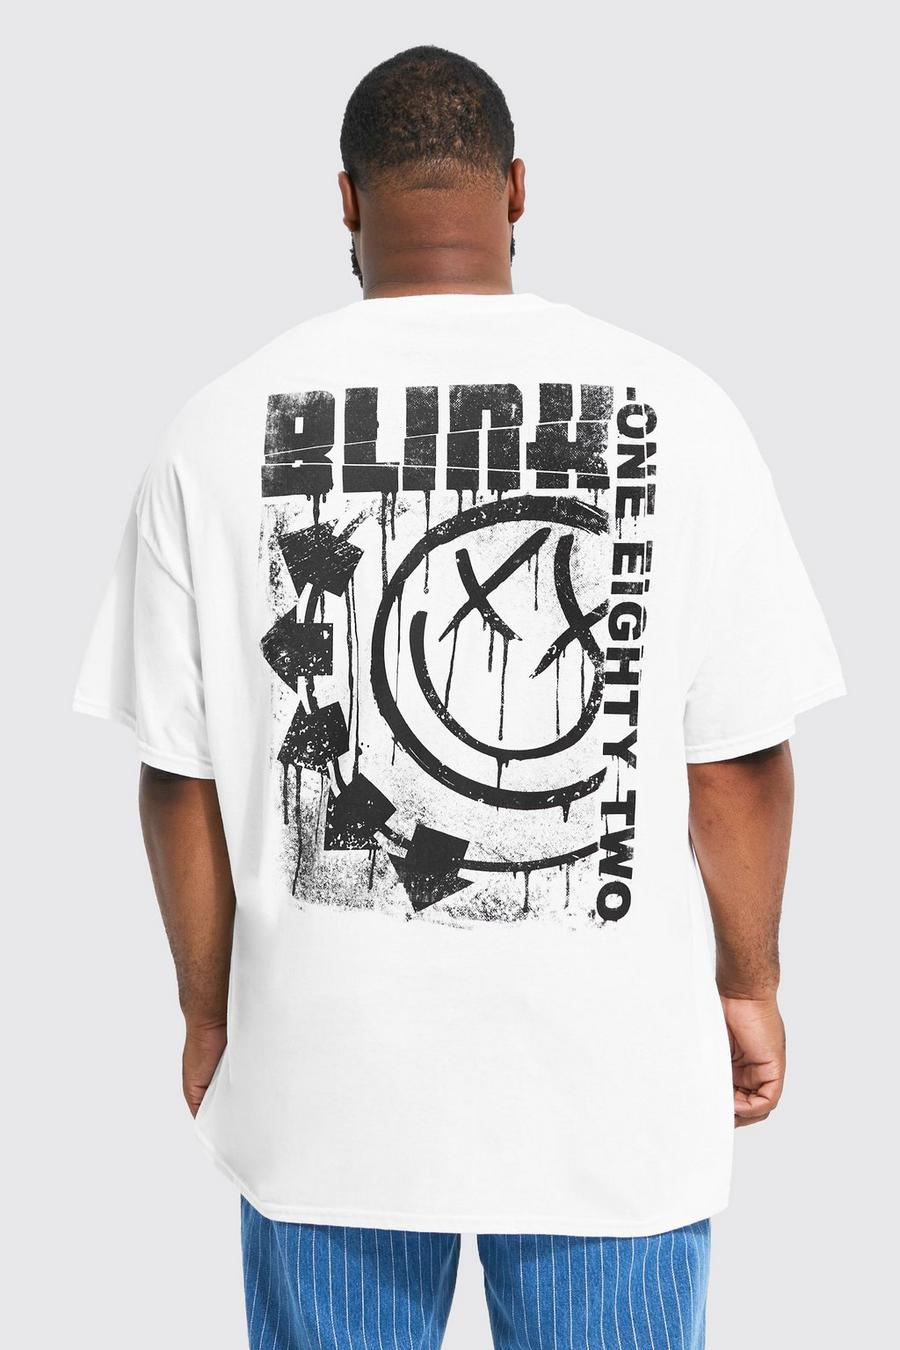 Plus T-Shirt mit lizenziertem Blink 182 Print, White